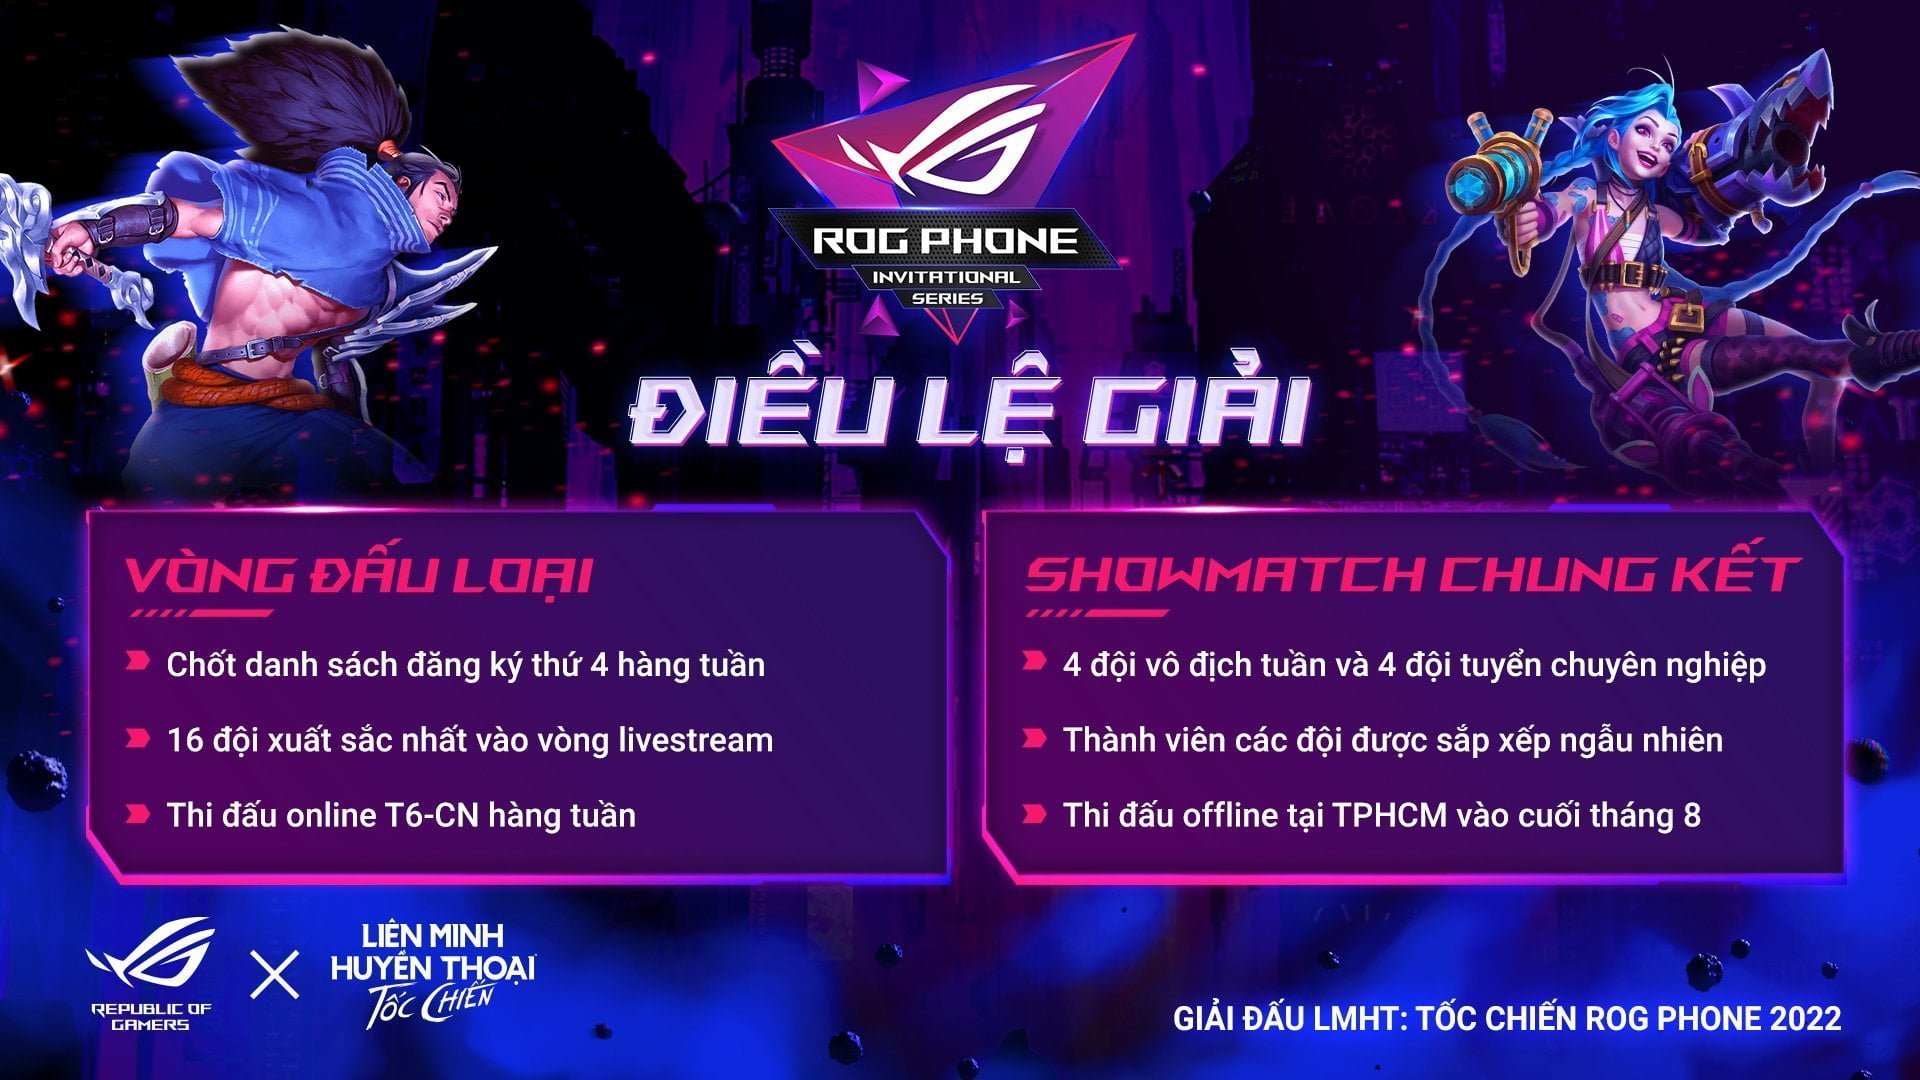 [PR] ASUS ROG và VNG công bố giải đấu ROG Phone Invitational Series 2022 bộ môn thể thao điện tử Liên Minh Huyền Thoại: Tốc Chiến - Image 3